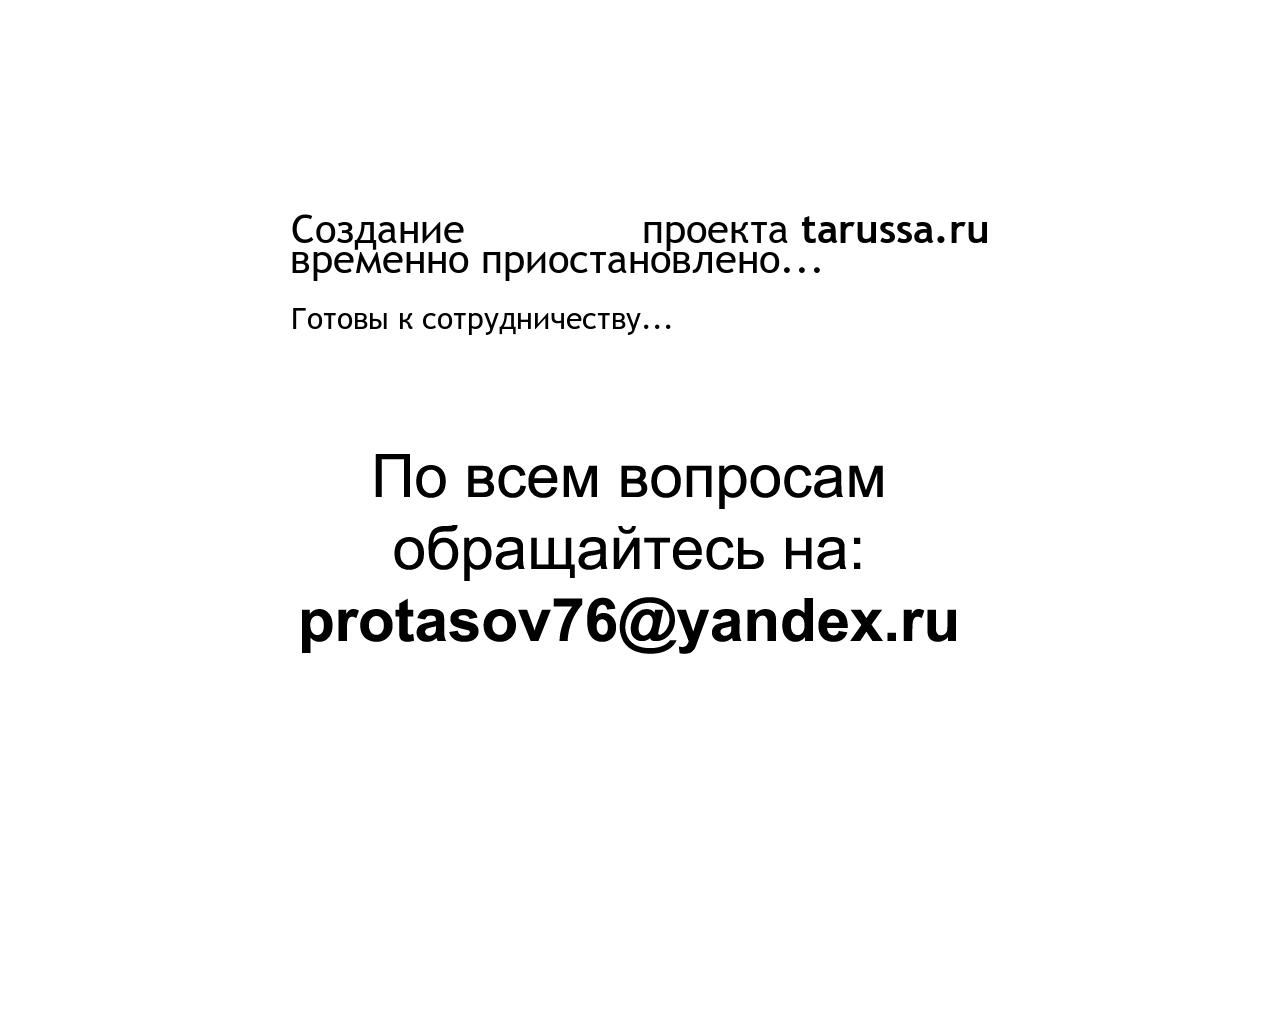 Изображение сайта tarussa.ru в разрешении 1280x1024